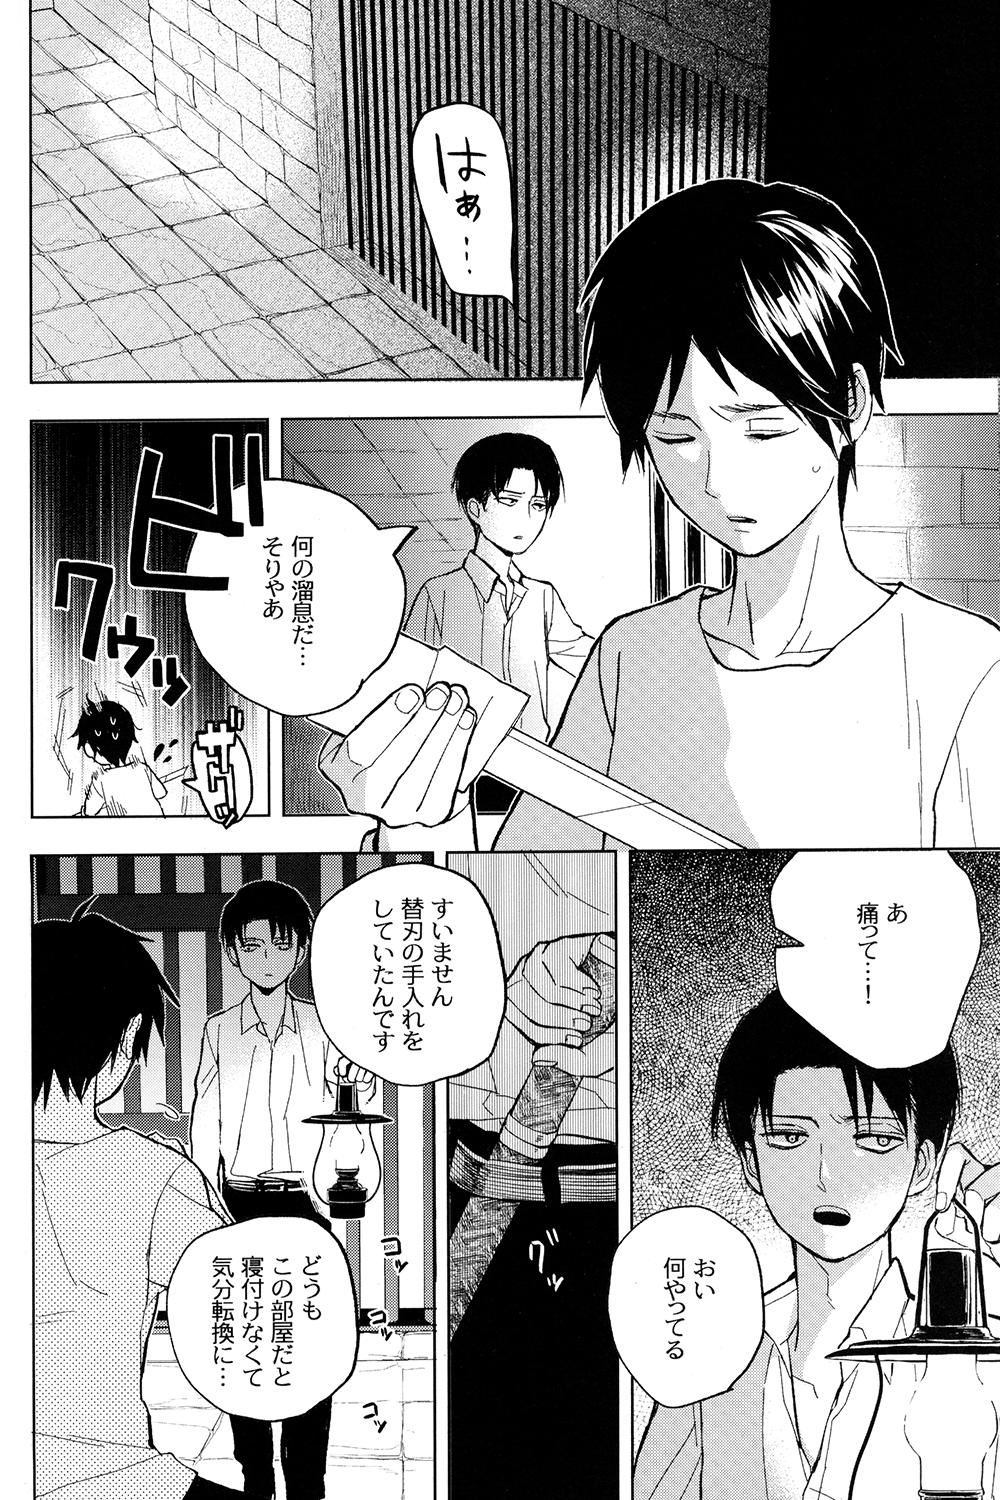 Slutty Sore Igai wa Hito ka, Ina ka - Shingeki no kyojin Asstomouth - Page 10